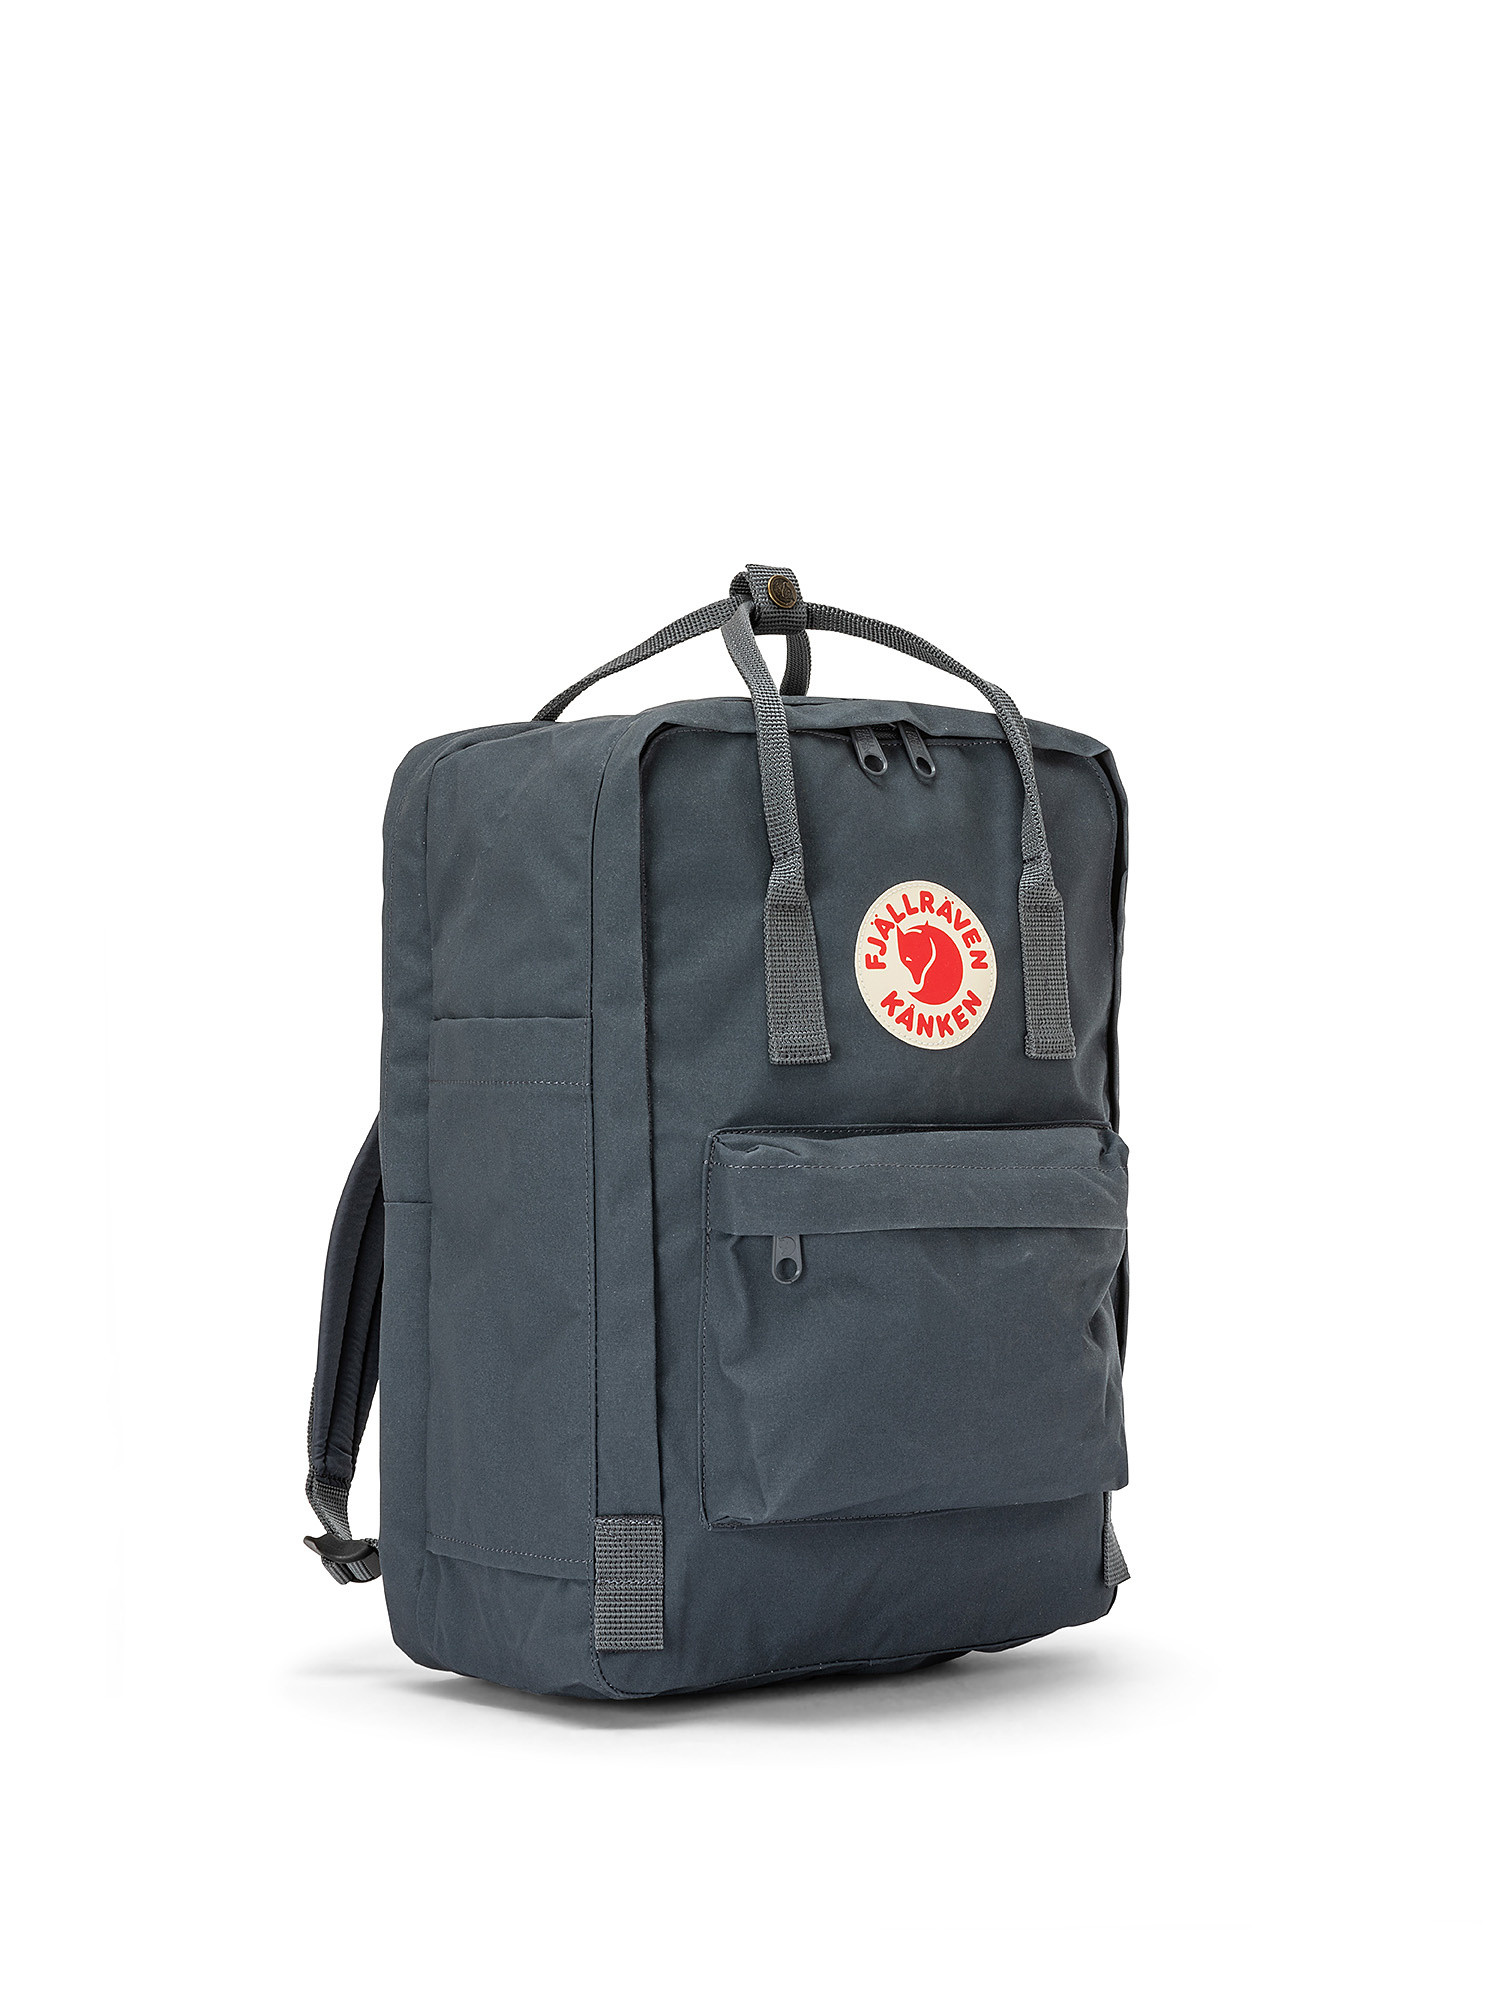 Kanken laptop backpack 15 ", Anthracite, large image number 1